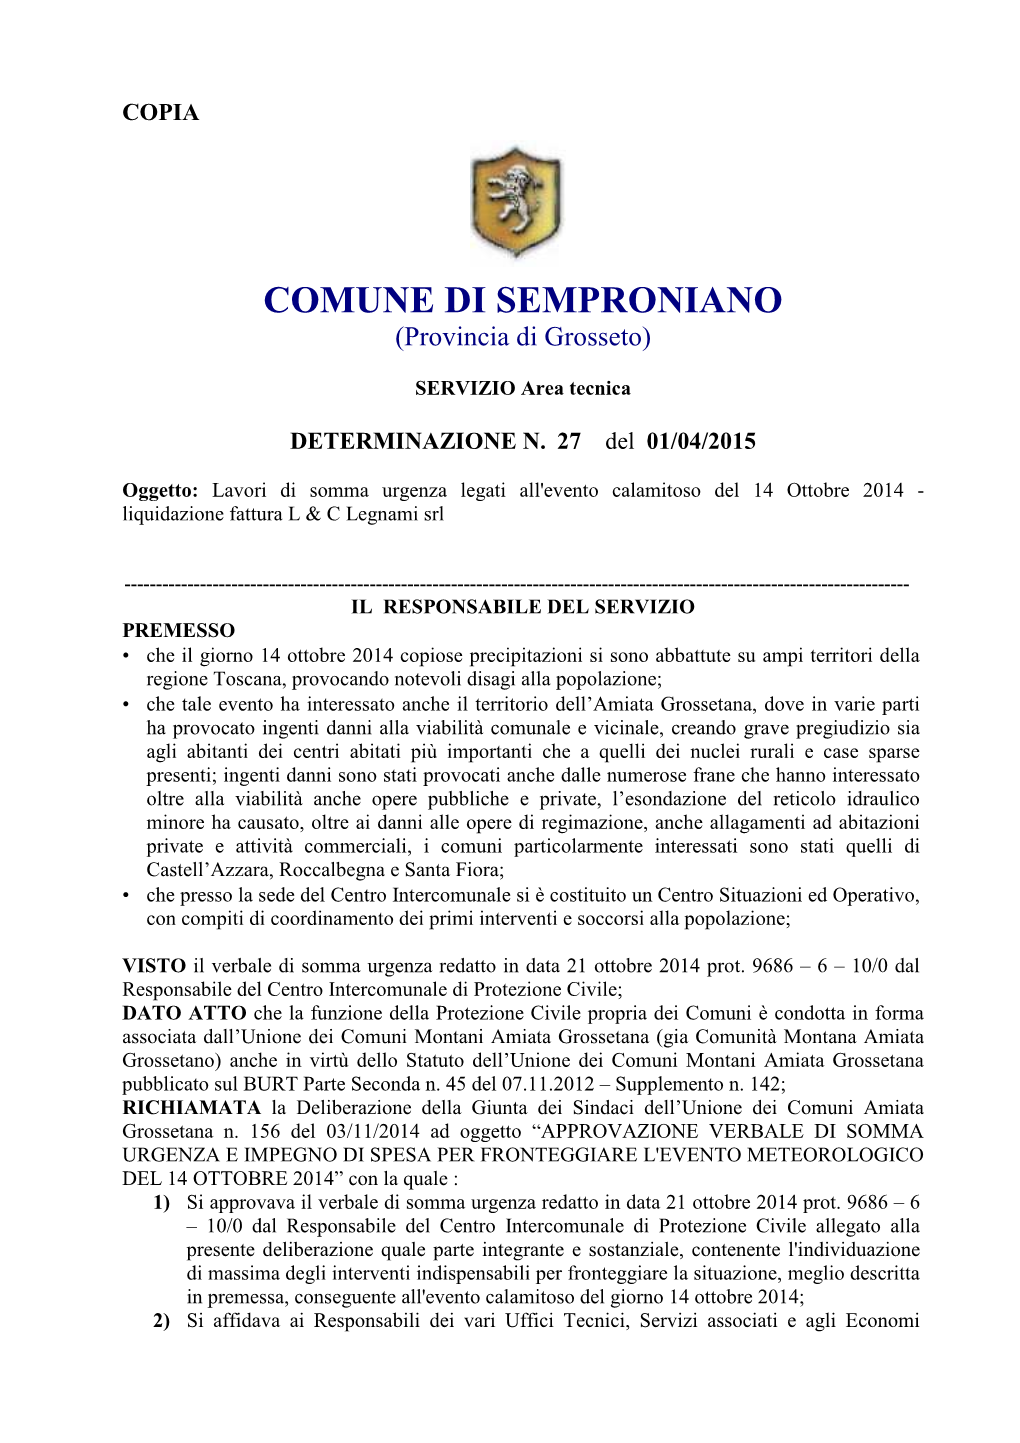 COMUNE DI SEMPRONIANO (Provincia Di Grosseto)